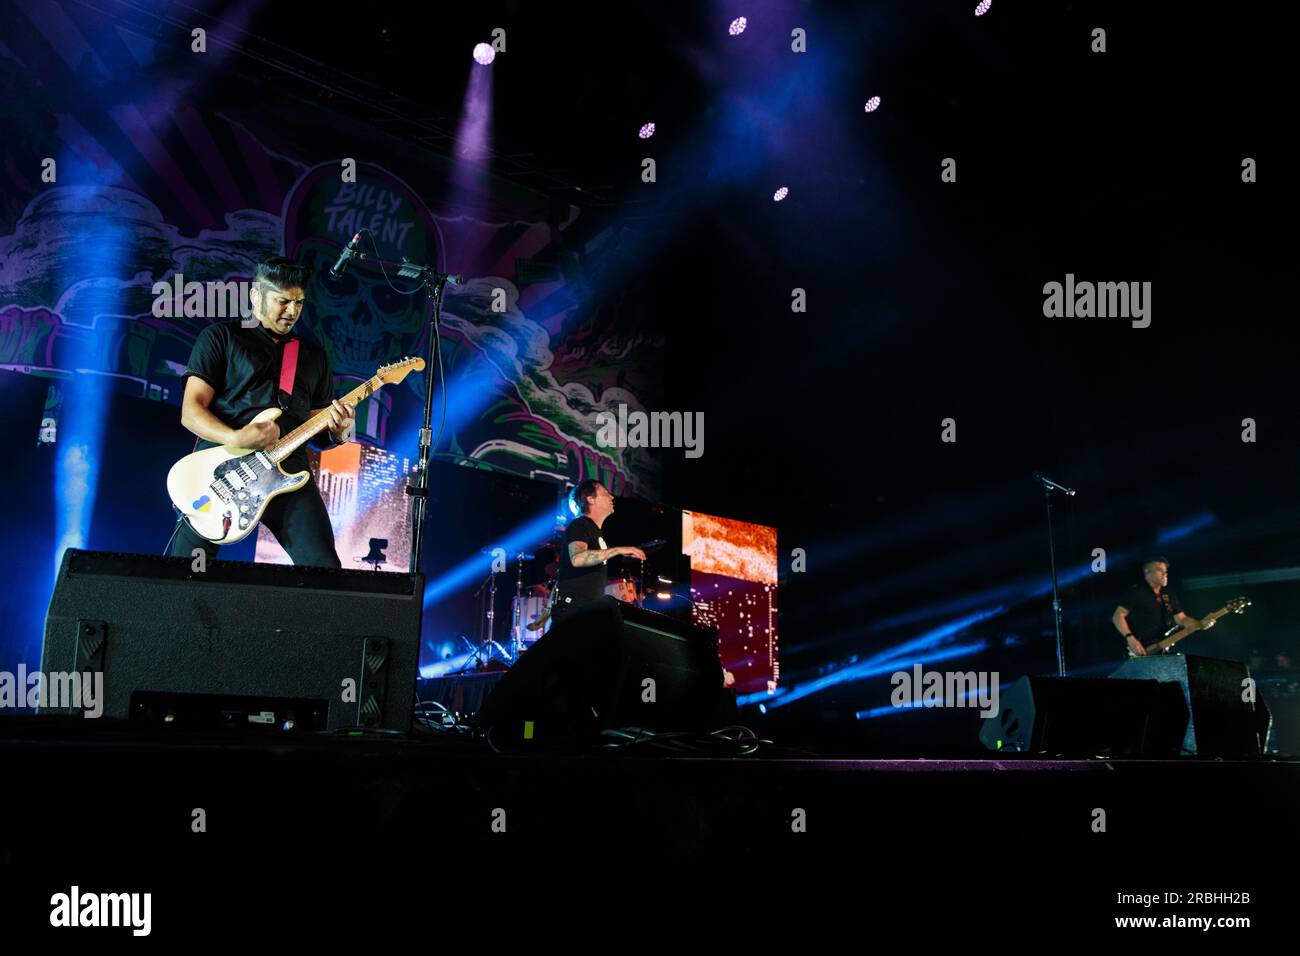 Kanadische Punkband Billy Talent tritt auf der Bühne auf Stockfoto